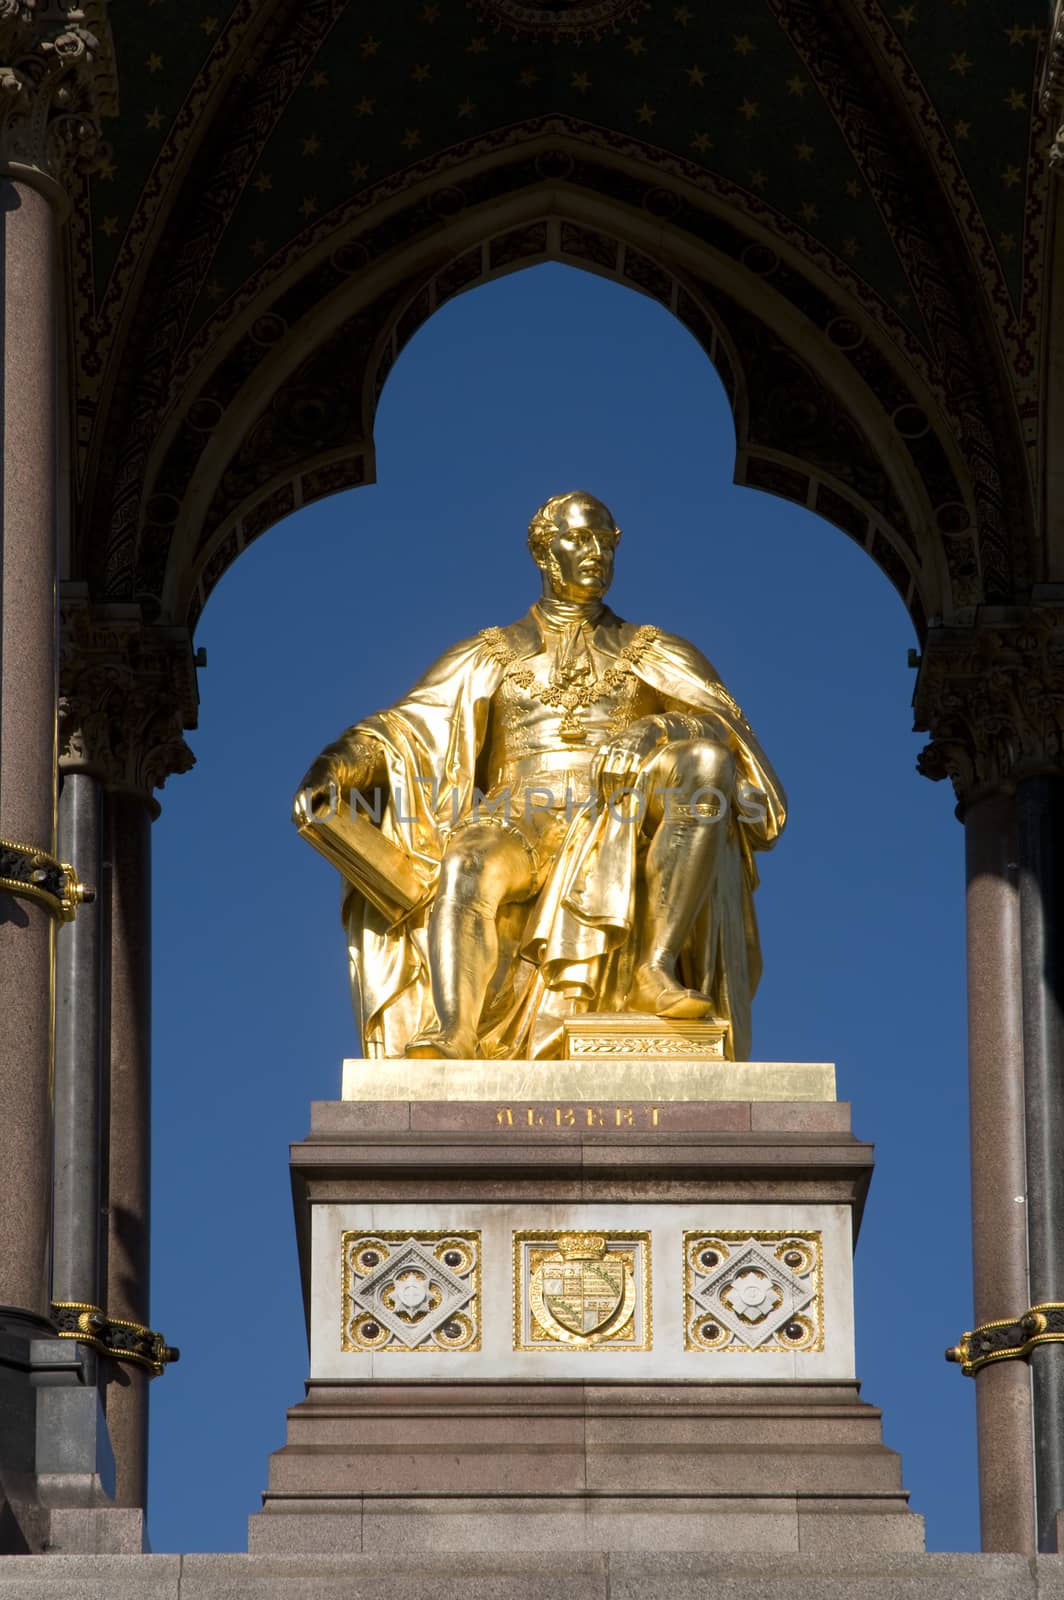 Statue of Prince Albert in the Albert Memorial